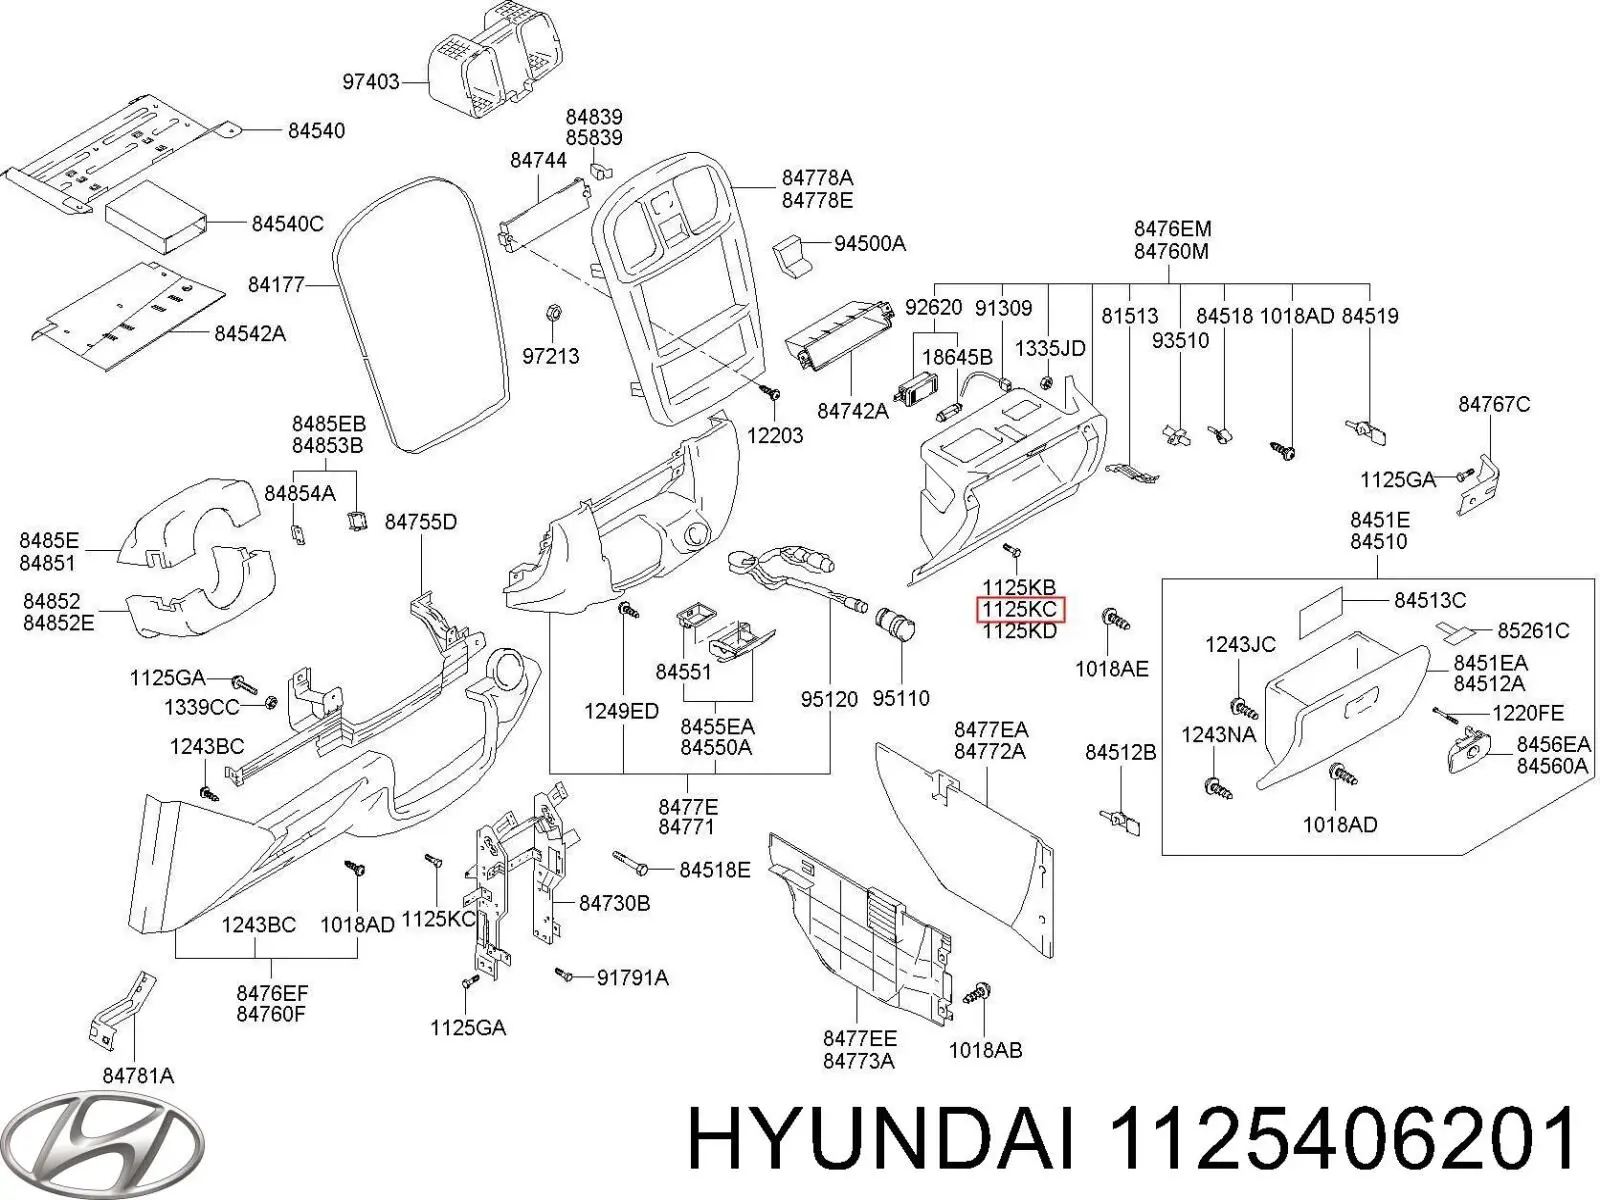 1130006201 Hyundai/Kia tornillo (tuerca de sujeción)